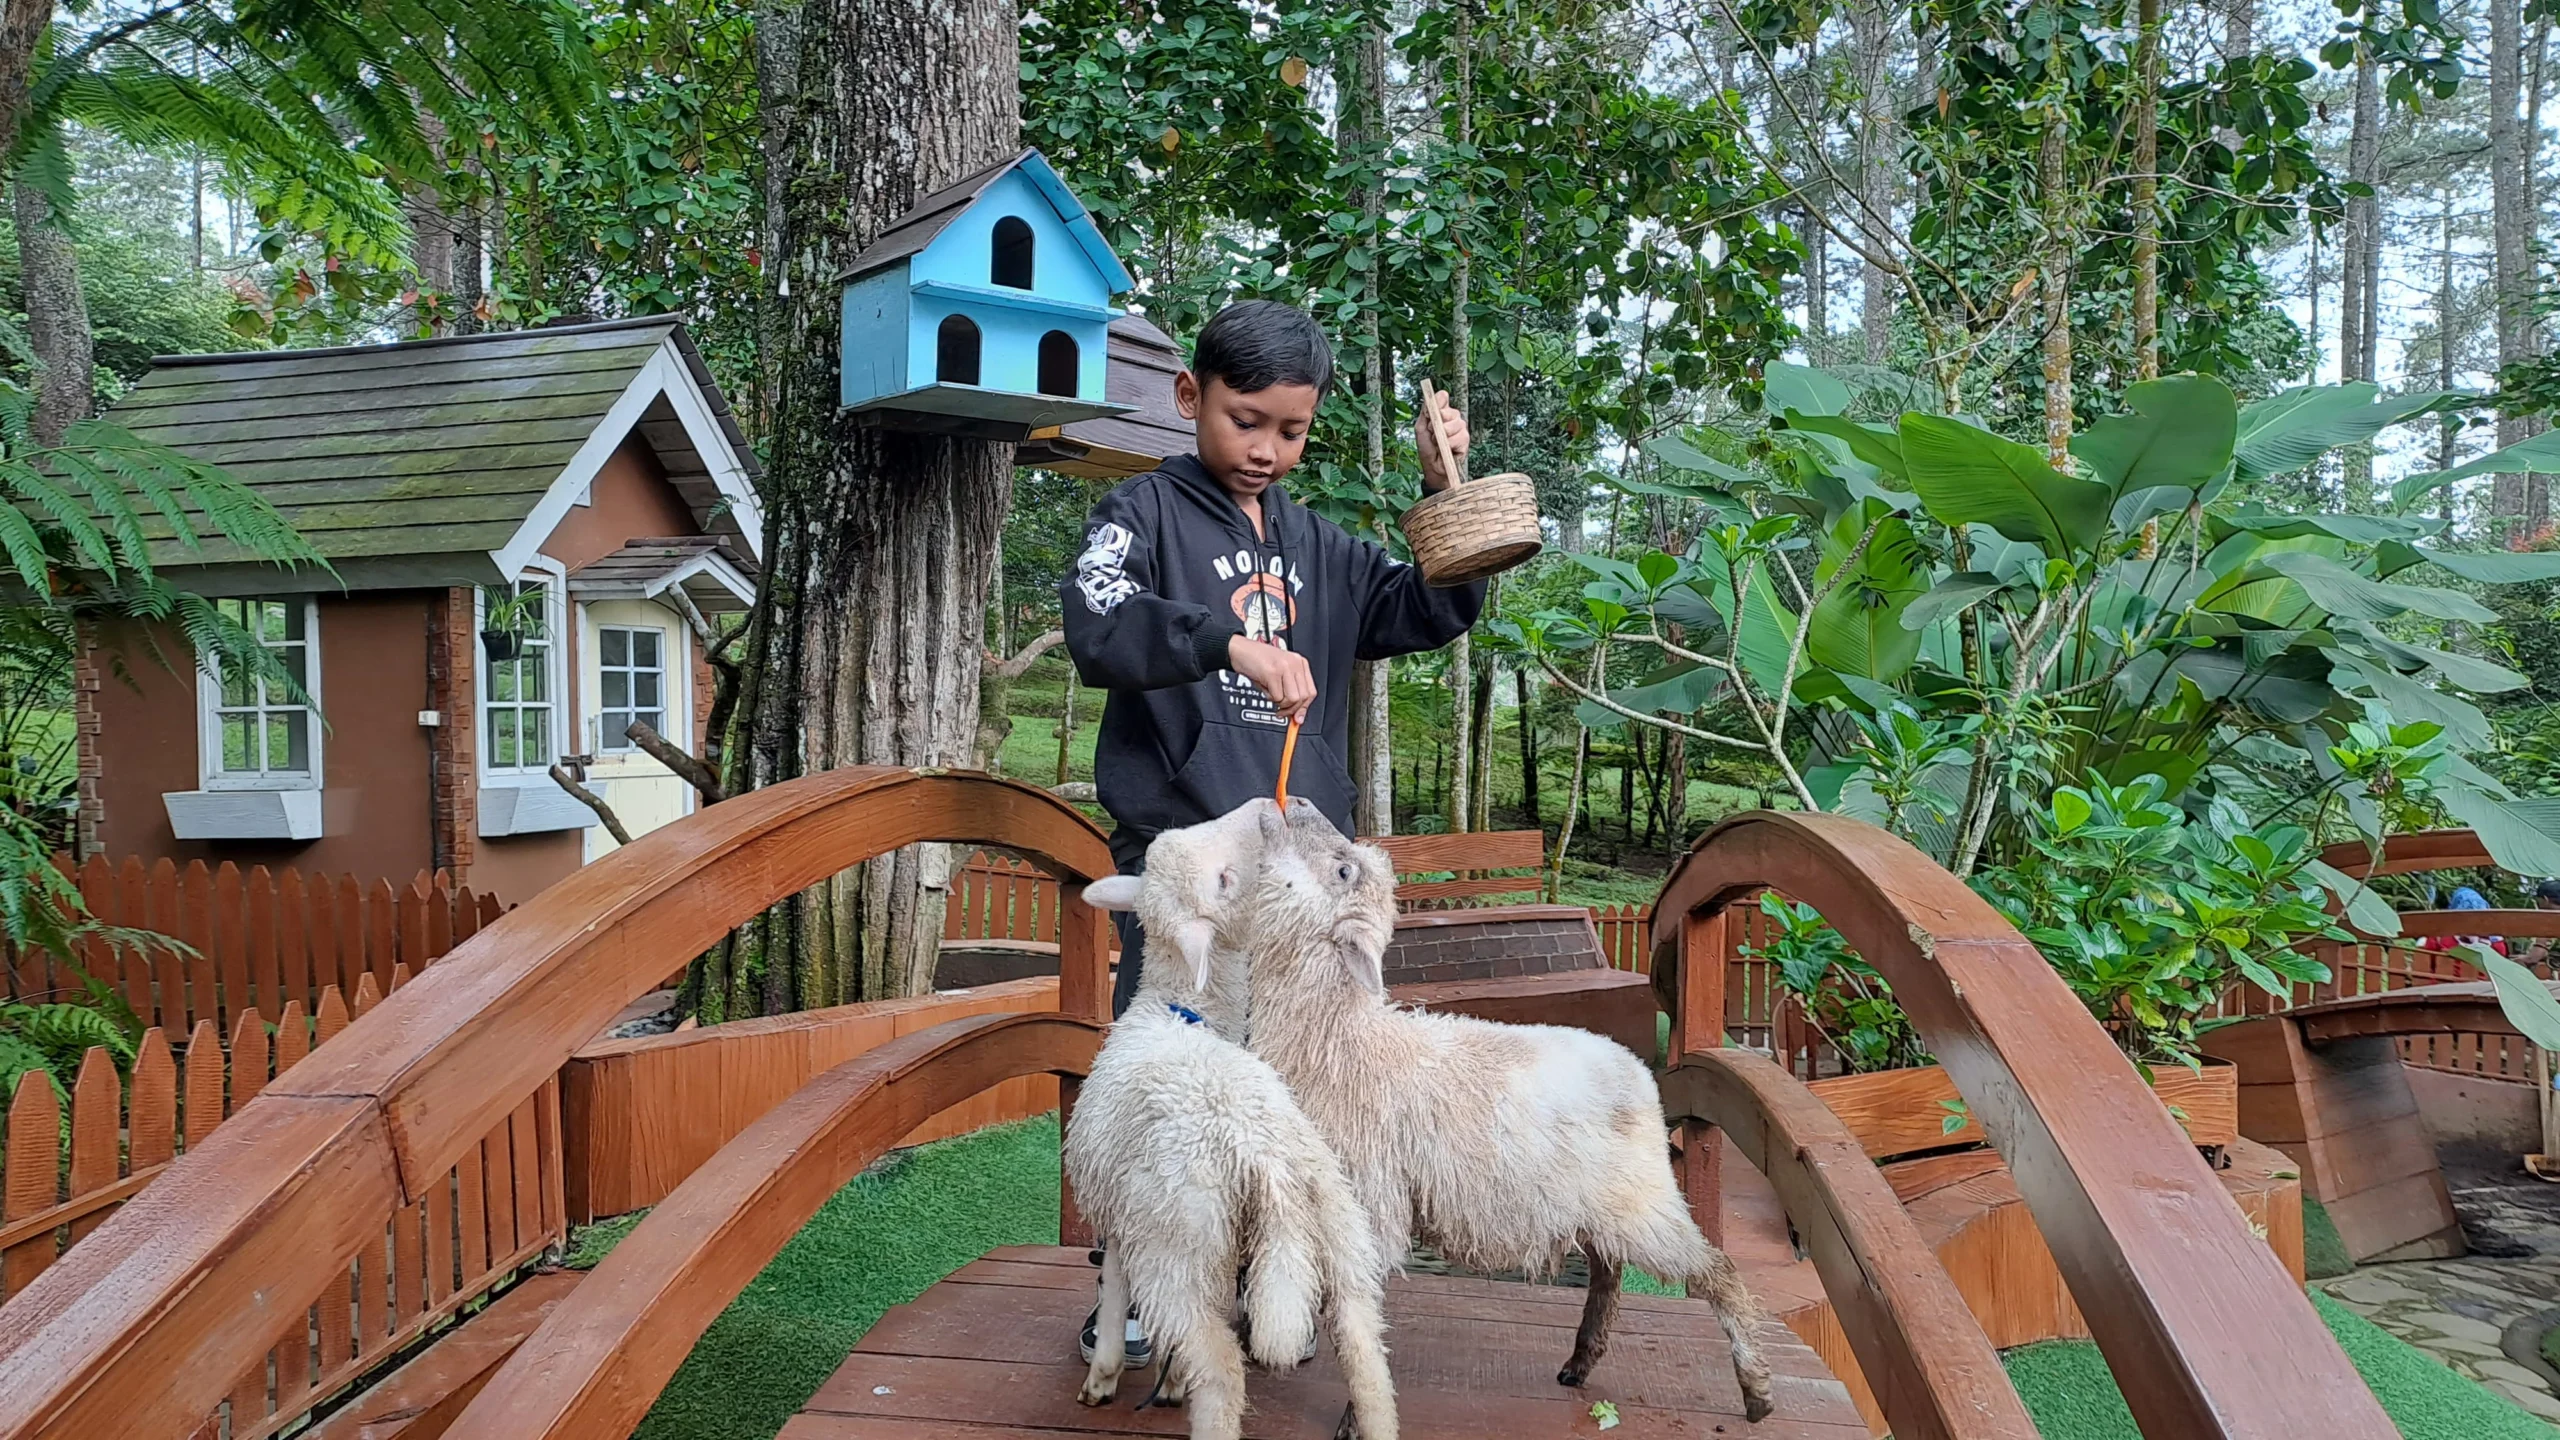 Rabbit Forest by Orchid Forest Cikole, Wisata Edukasi di Lembang Bisa Swafoto Hingga Beri Makan Hewan